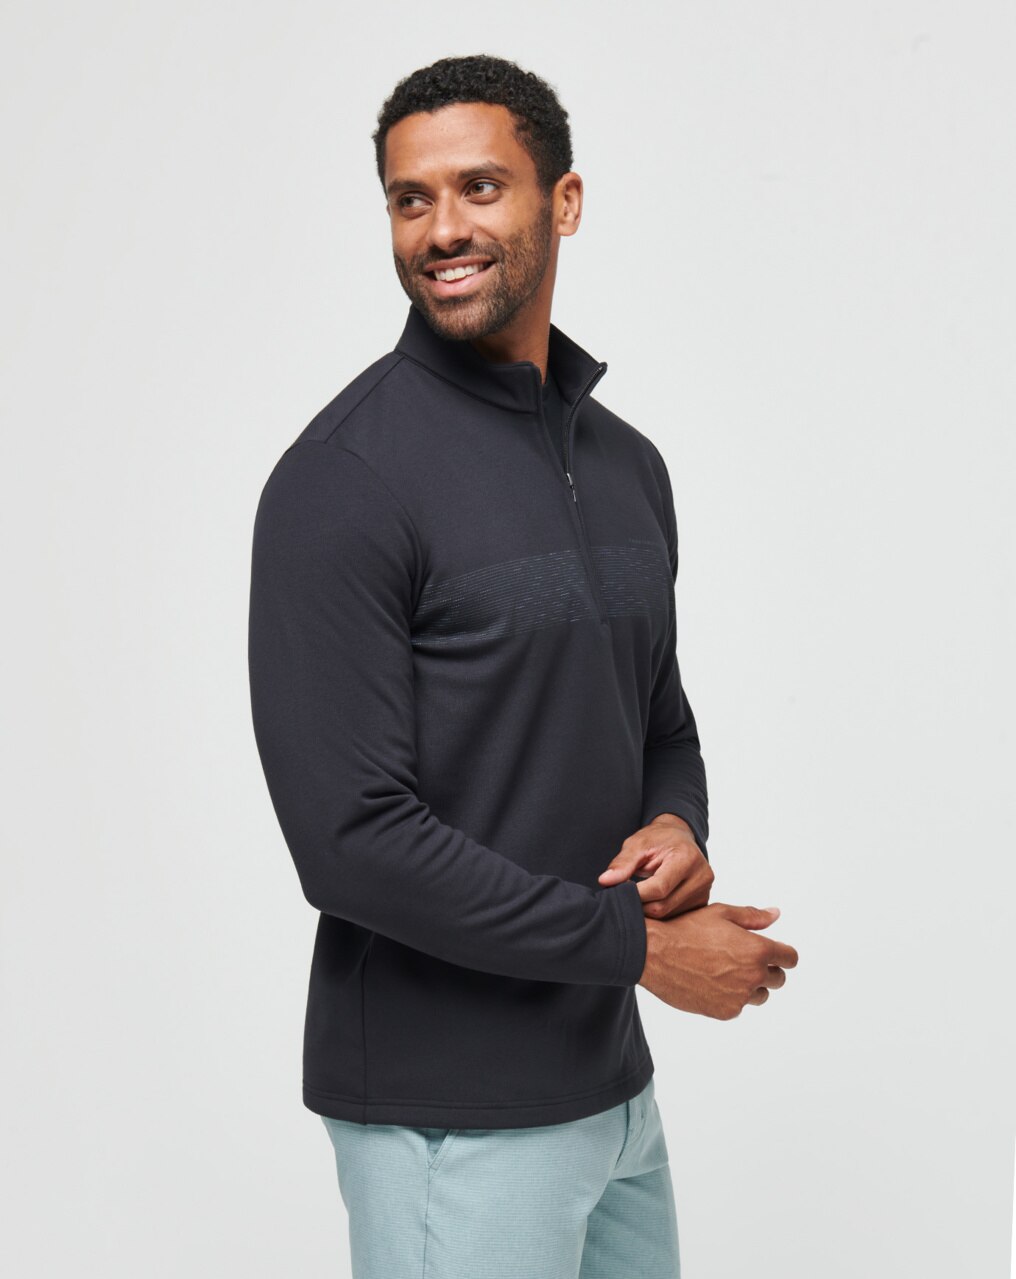 Calvin Klein Mens Grey 1/4 Zip Pullover Sweater Size XL - beyond exchange